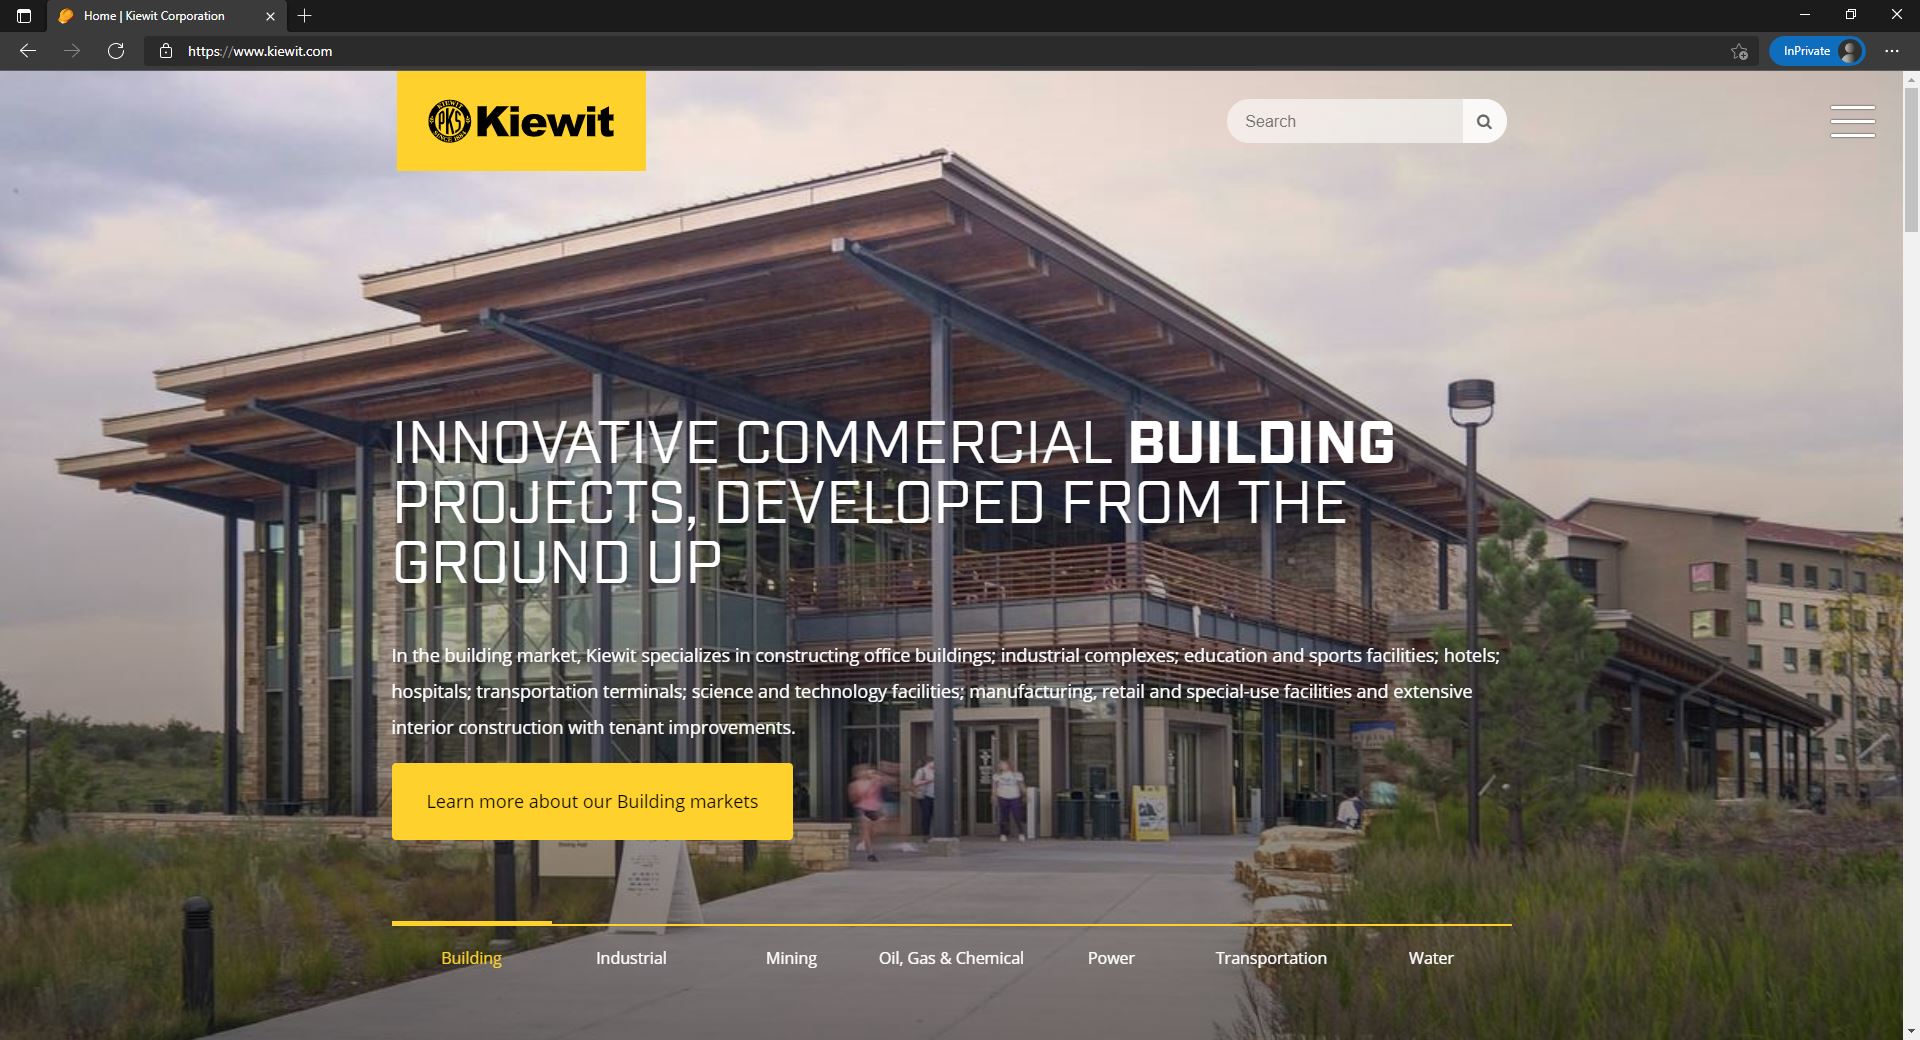 Kiewit website homepage